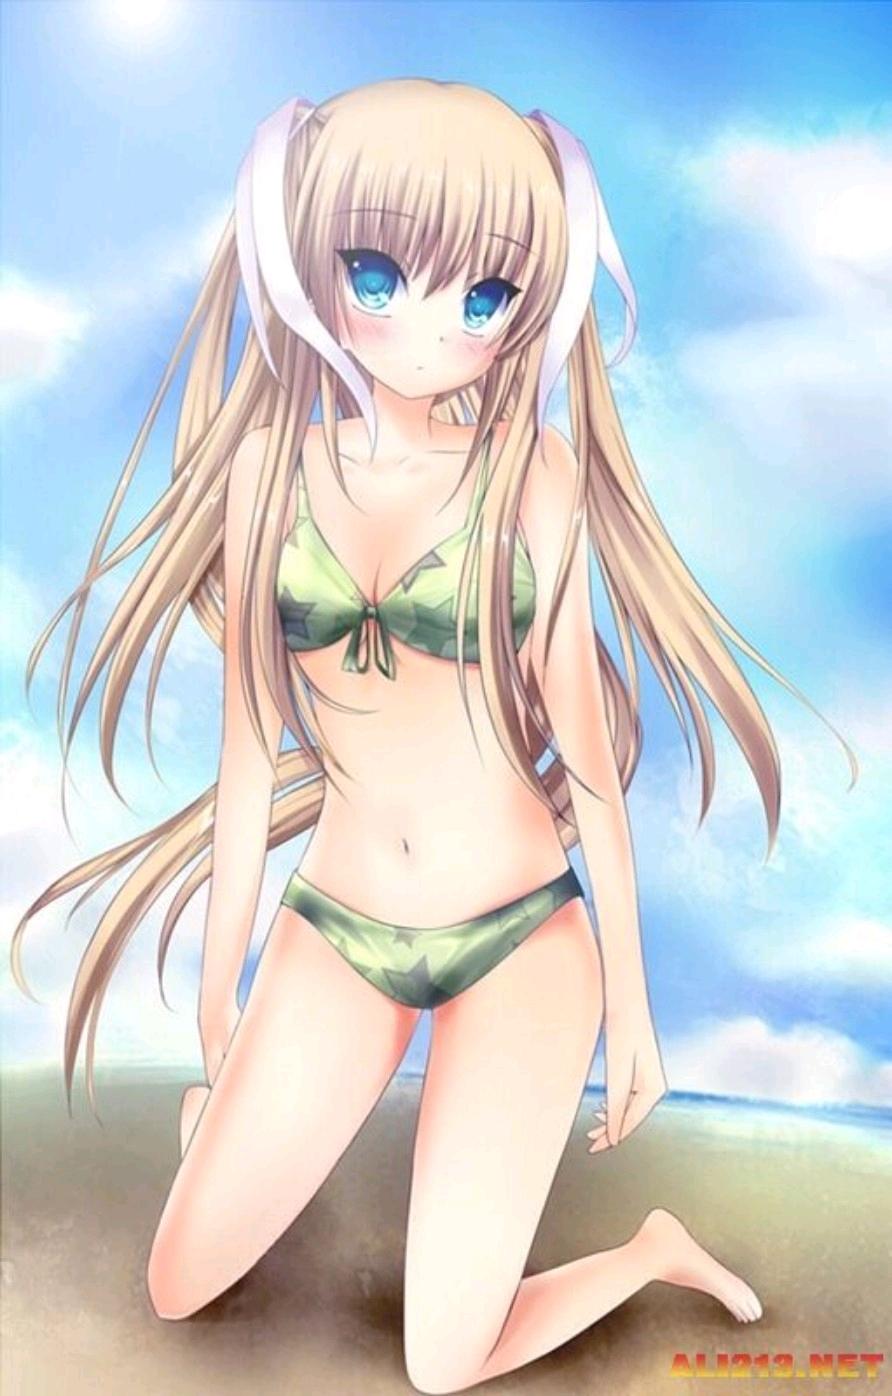 【夏日清流】二次元泳装美少女①你是喜欢死库水还是比基尼?